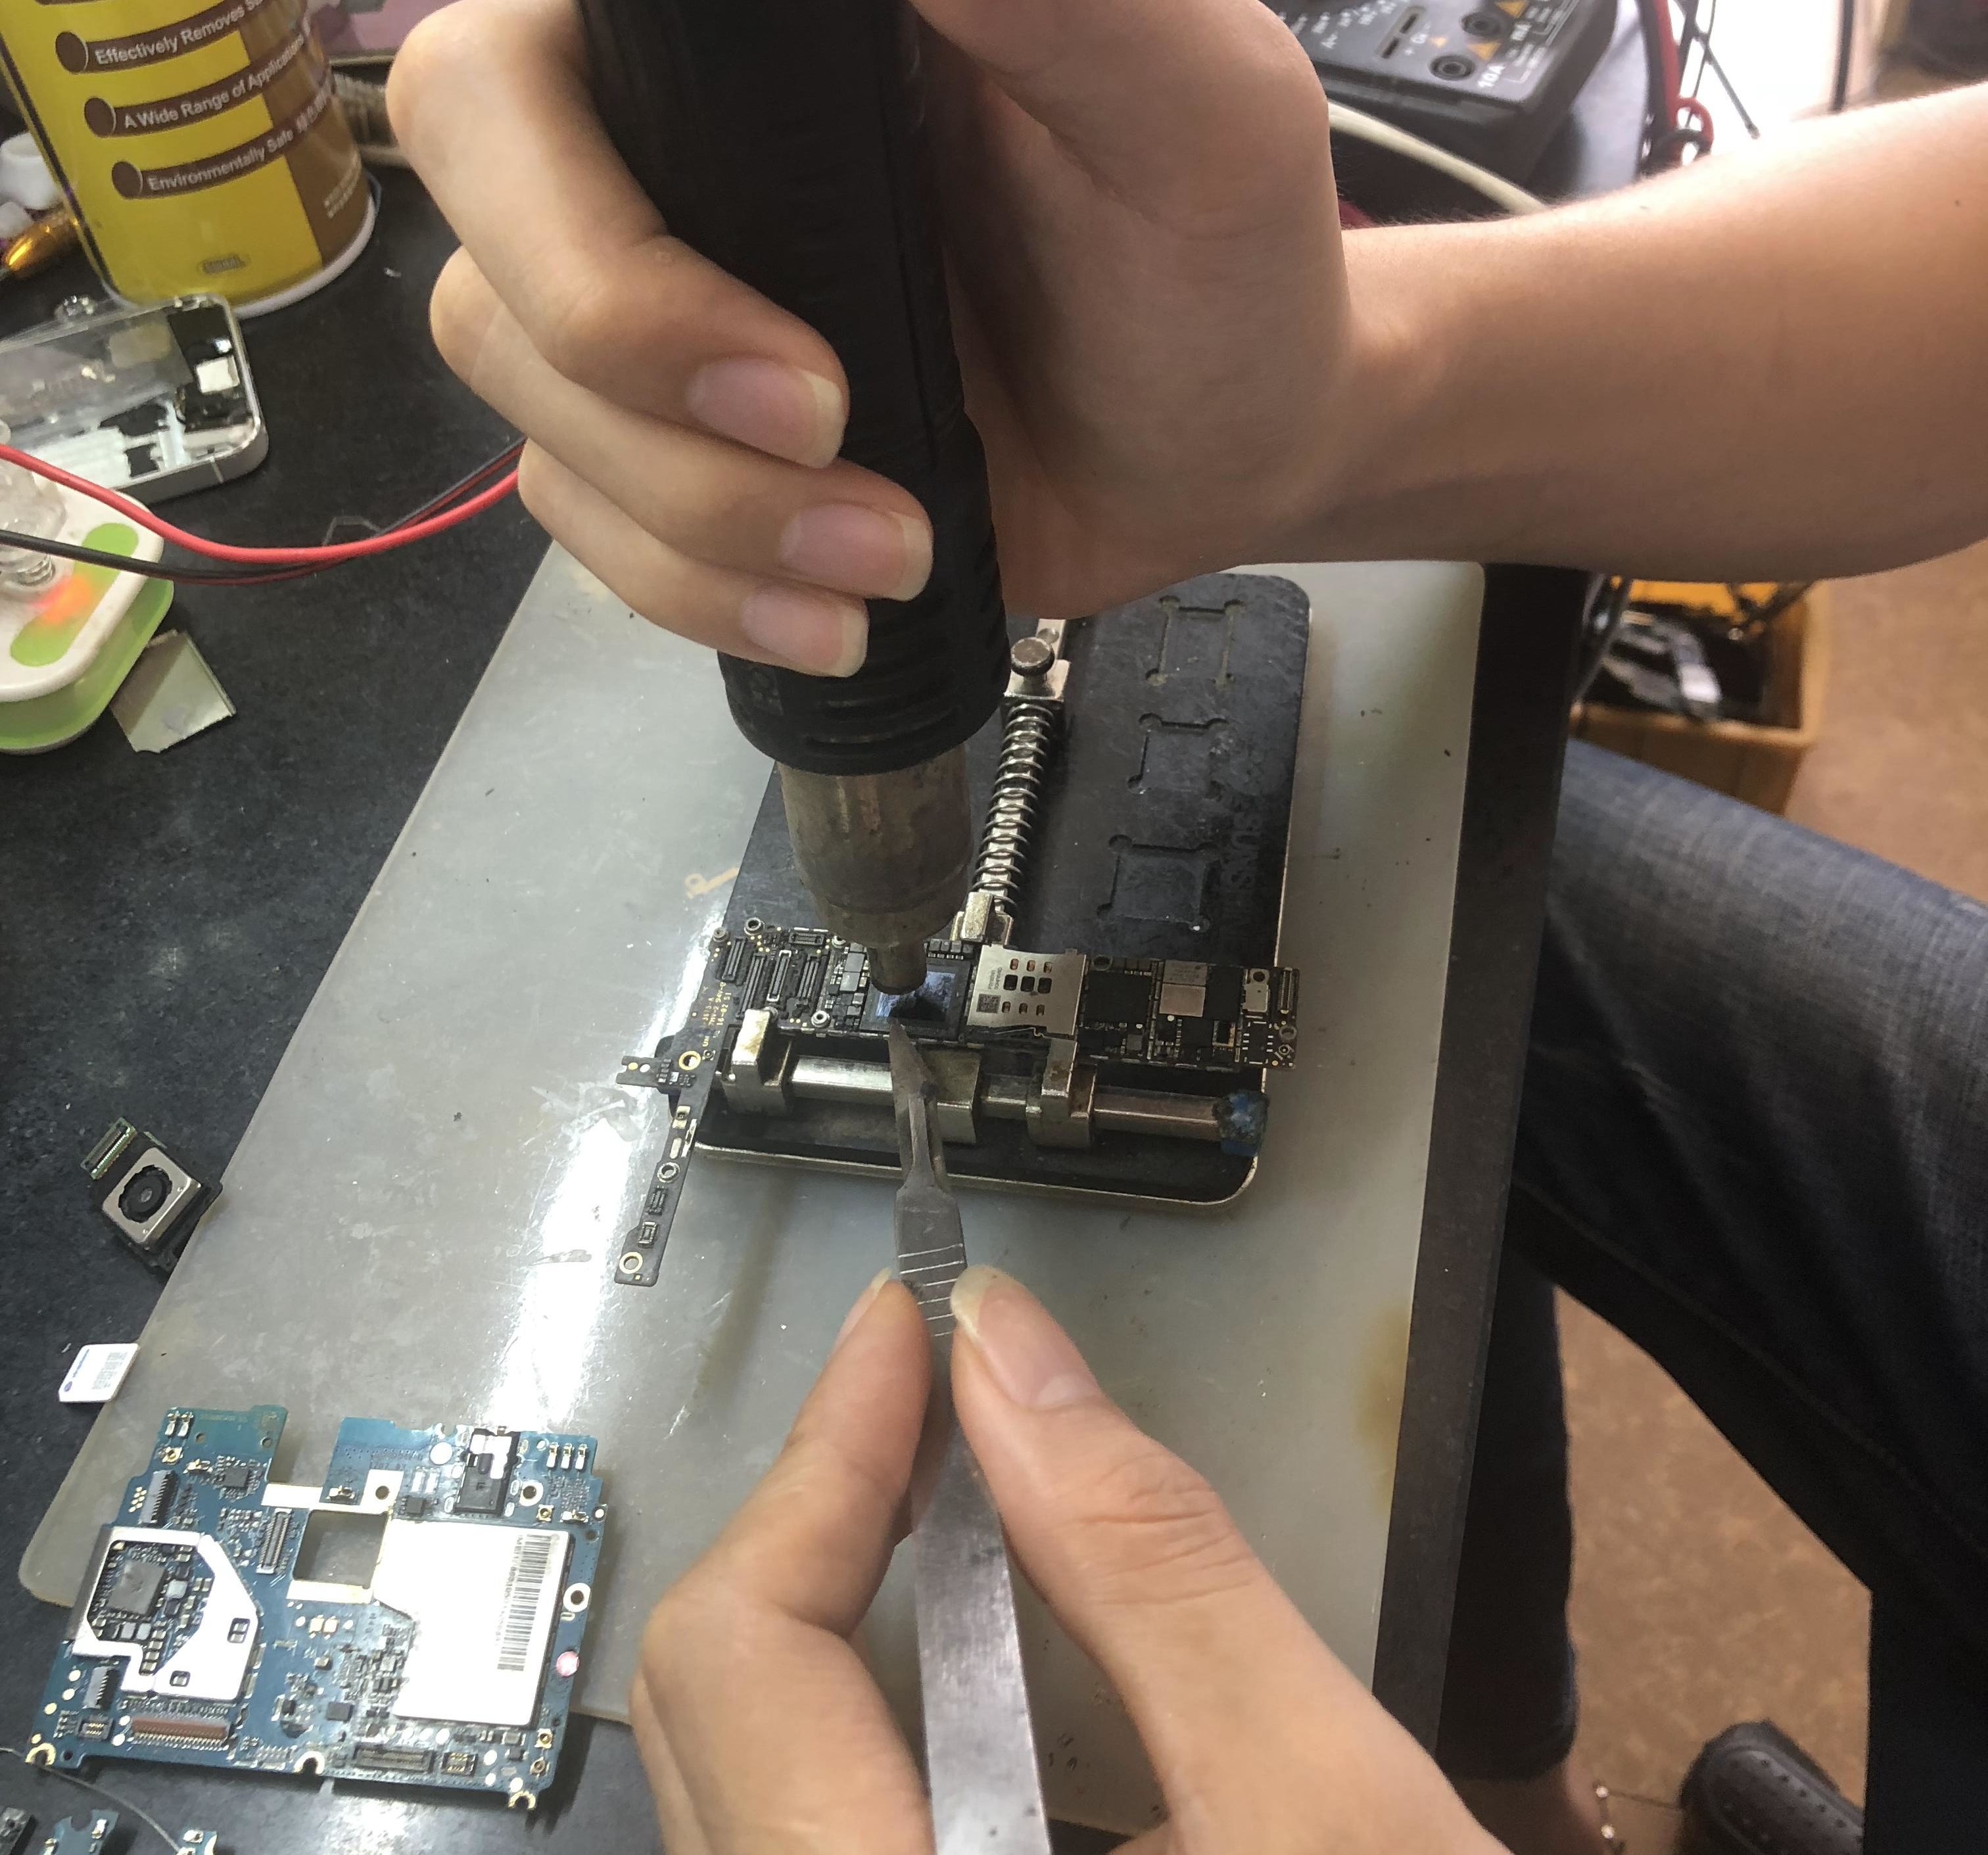 Kỹ thuật viên đang tiến hành thay chân sạc Xiaomi Mi 2 cho khách hàng.